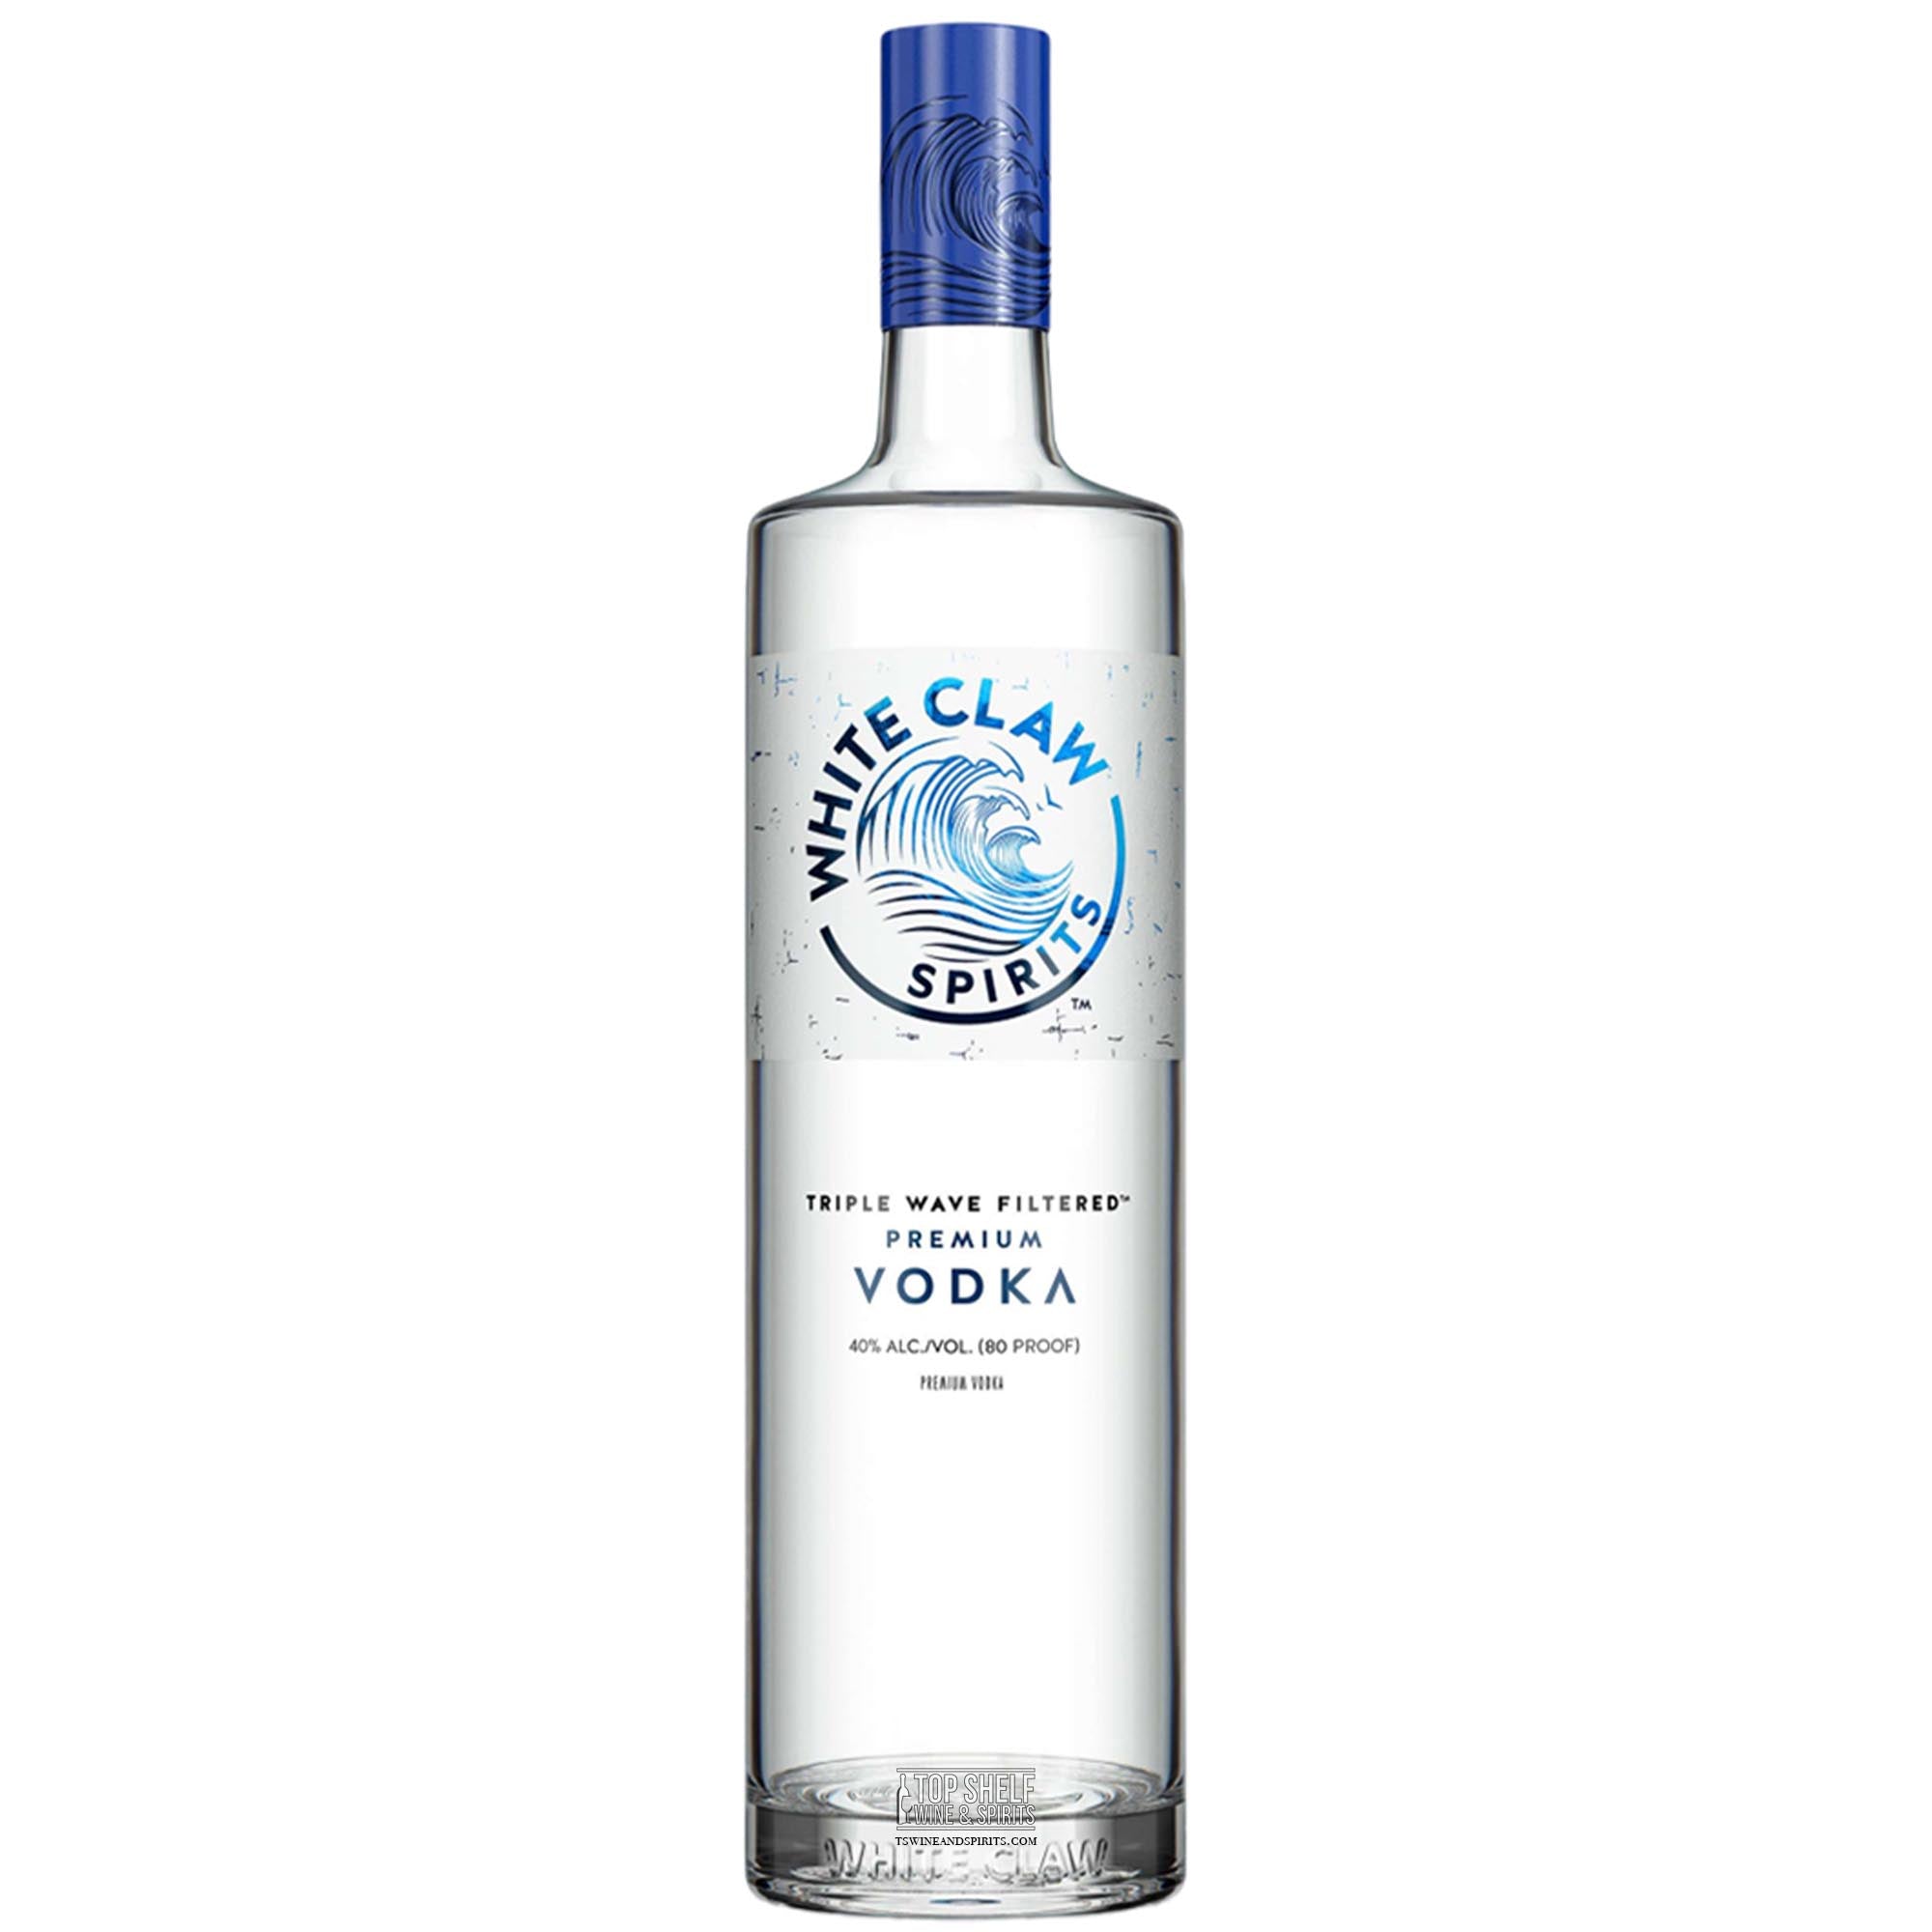 Żubrówka Bison Grass Vodka | Delivery & Gifting